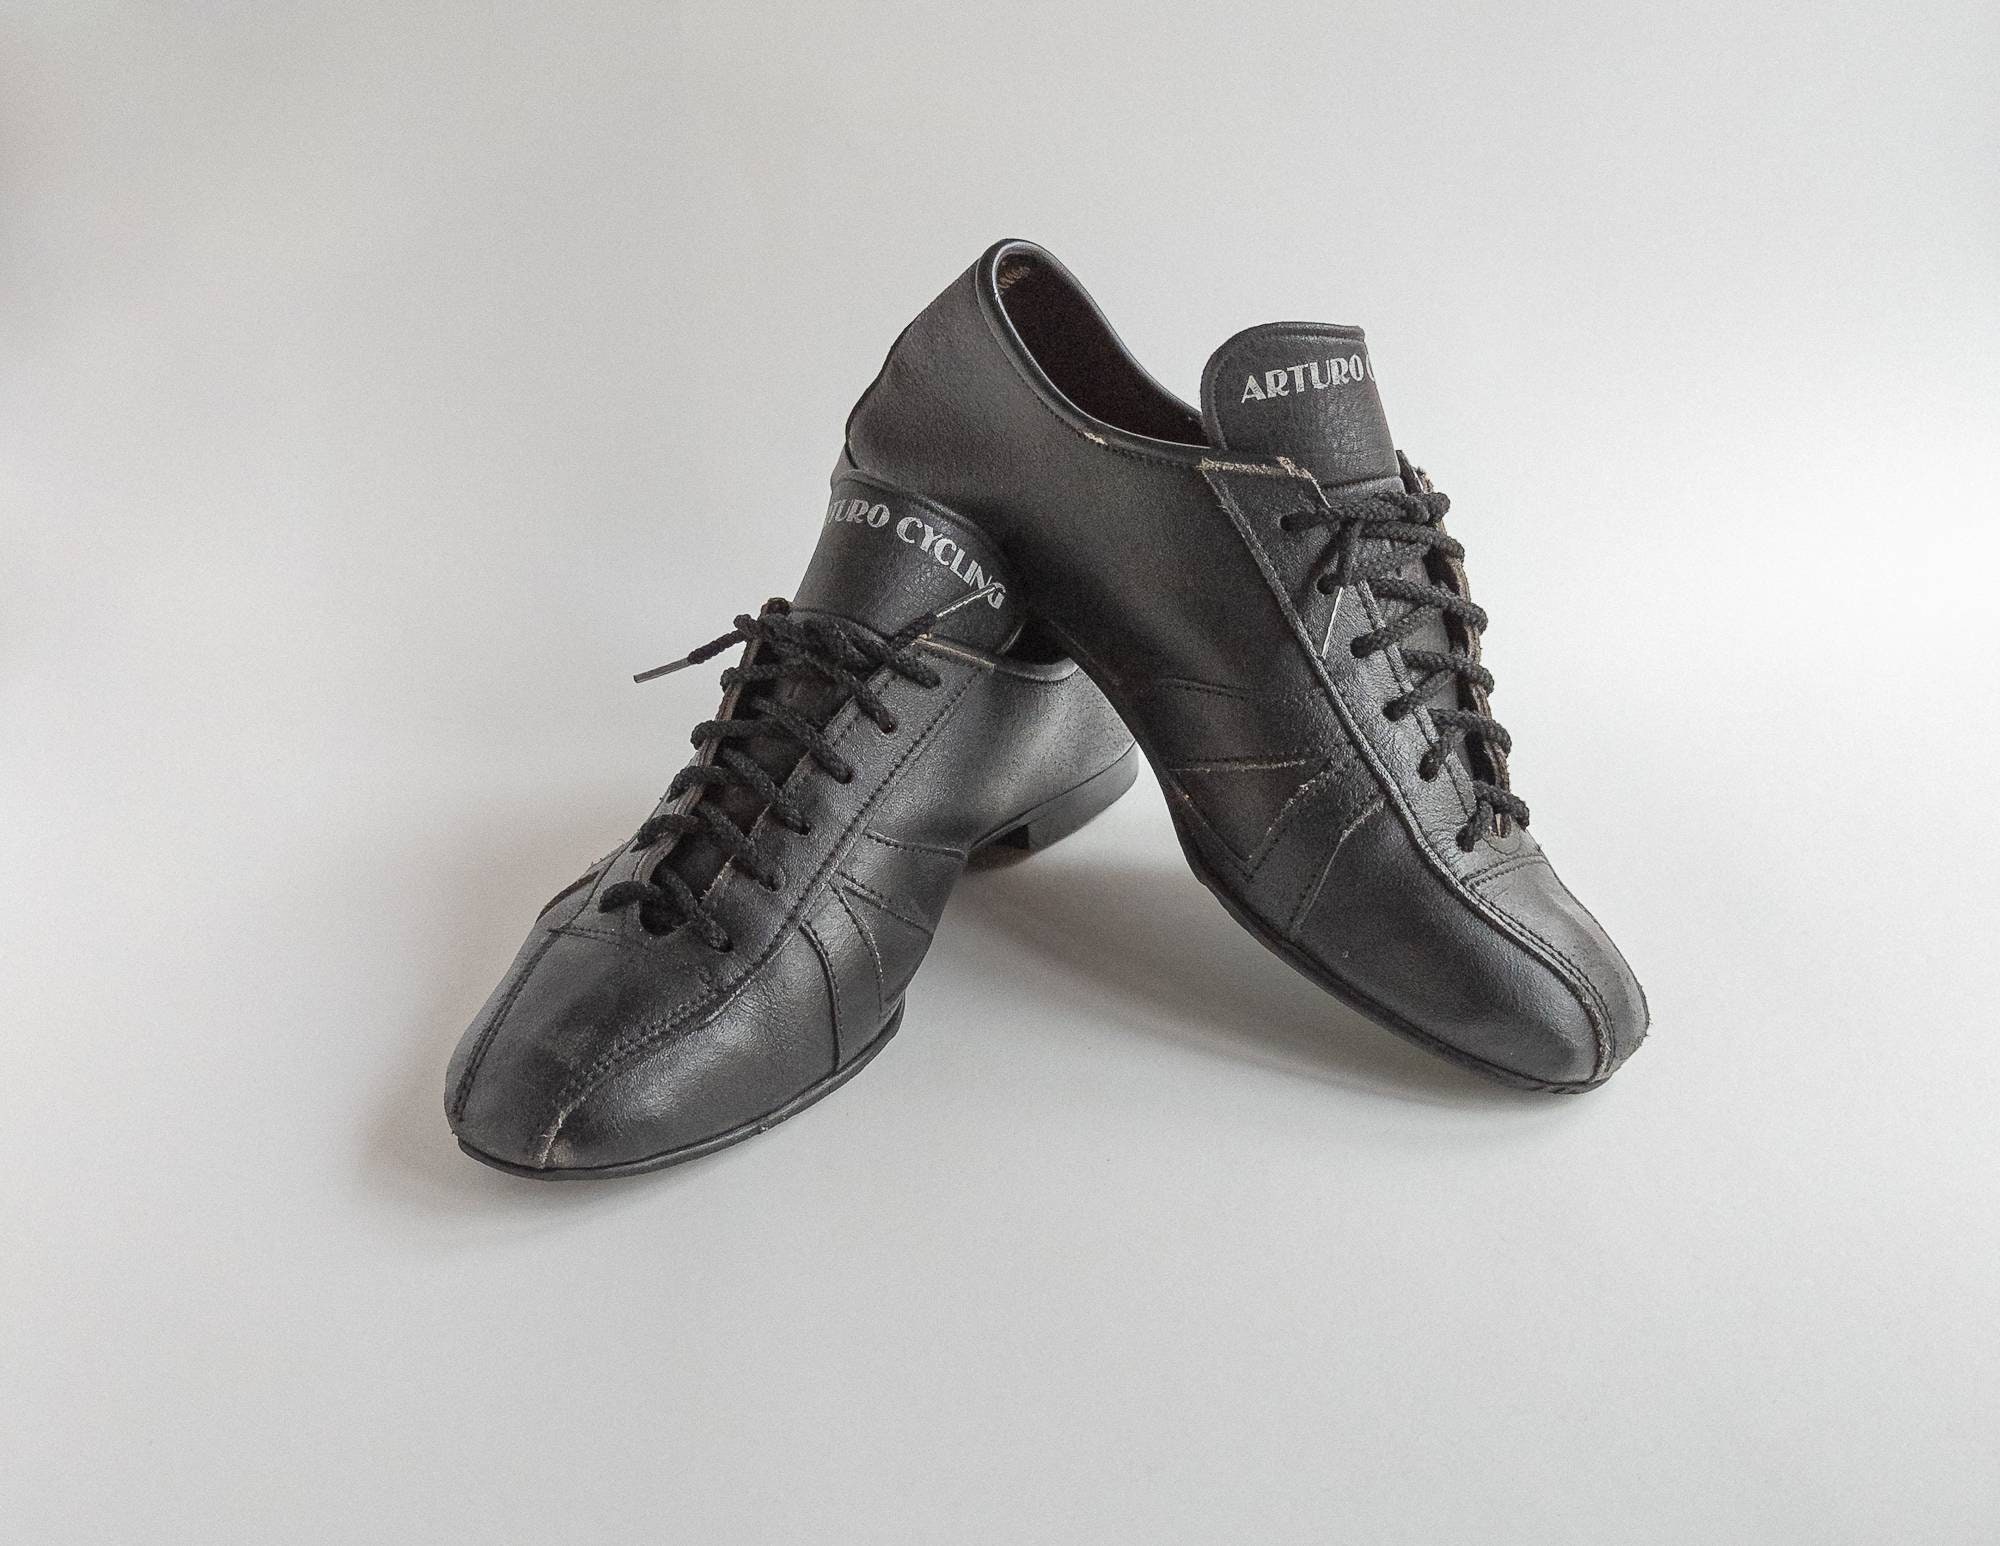 Bally “Arturo” men's black leather loafer slip on dress shoe, Size 9D |  Mens black leather loafers, Slip on dress shoe, Black leather loafers